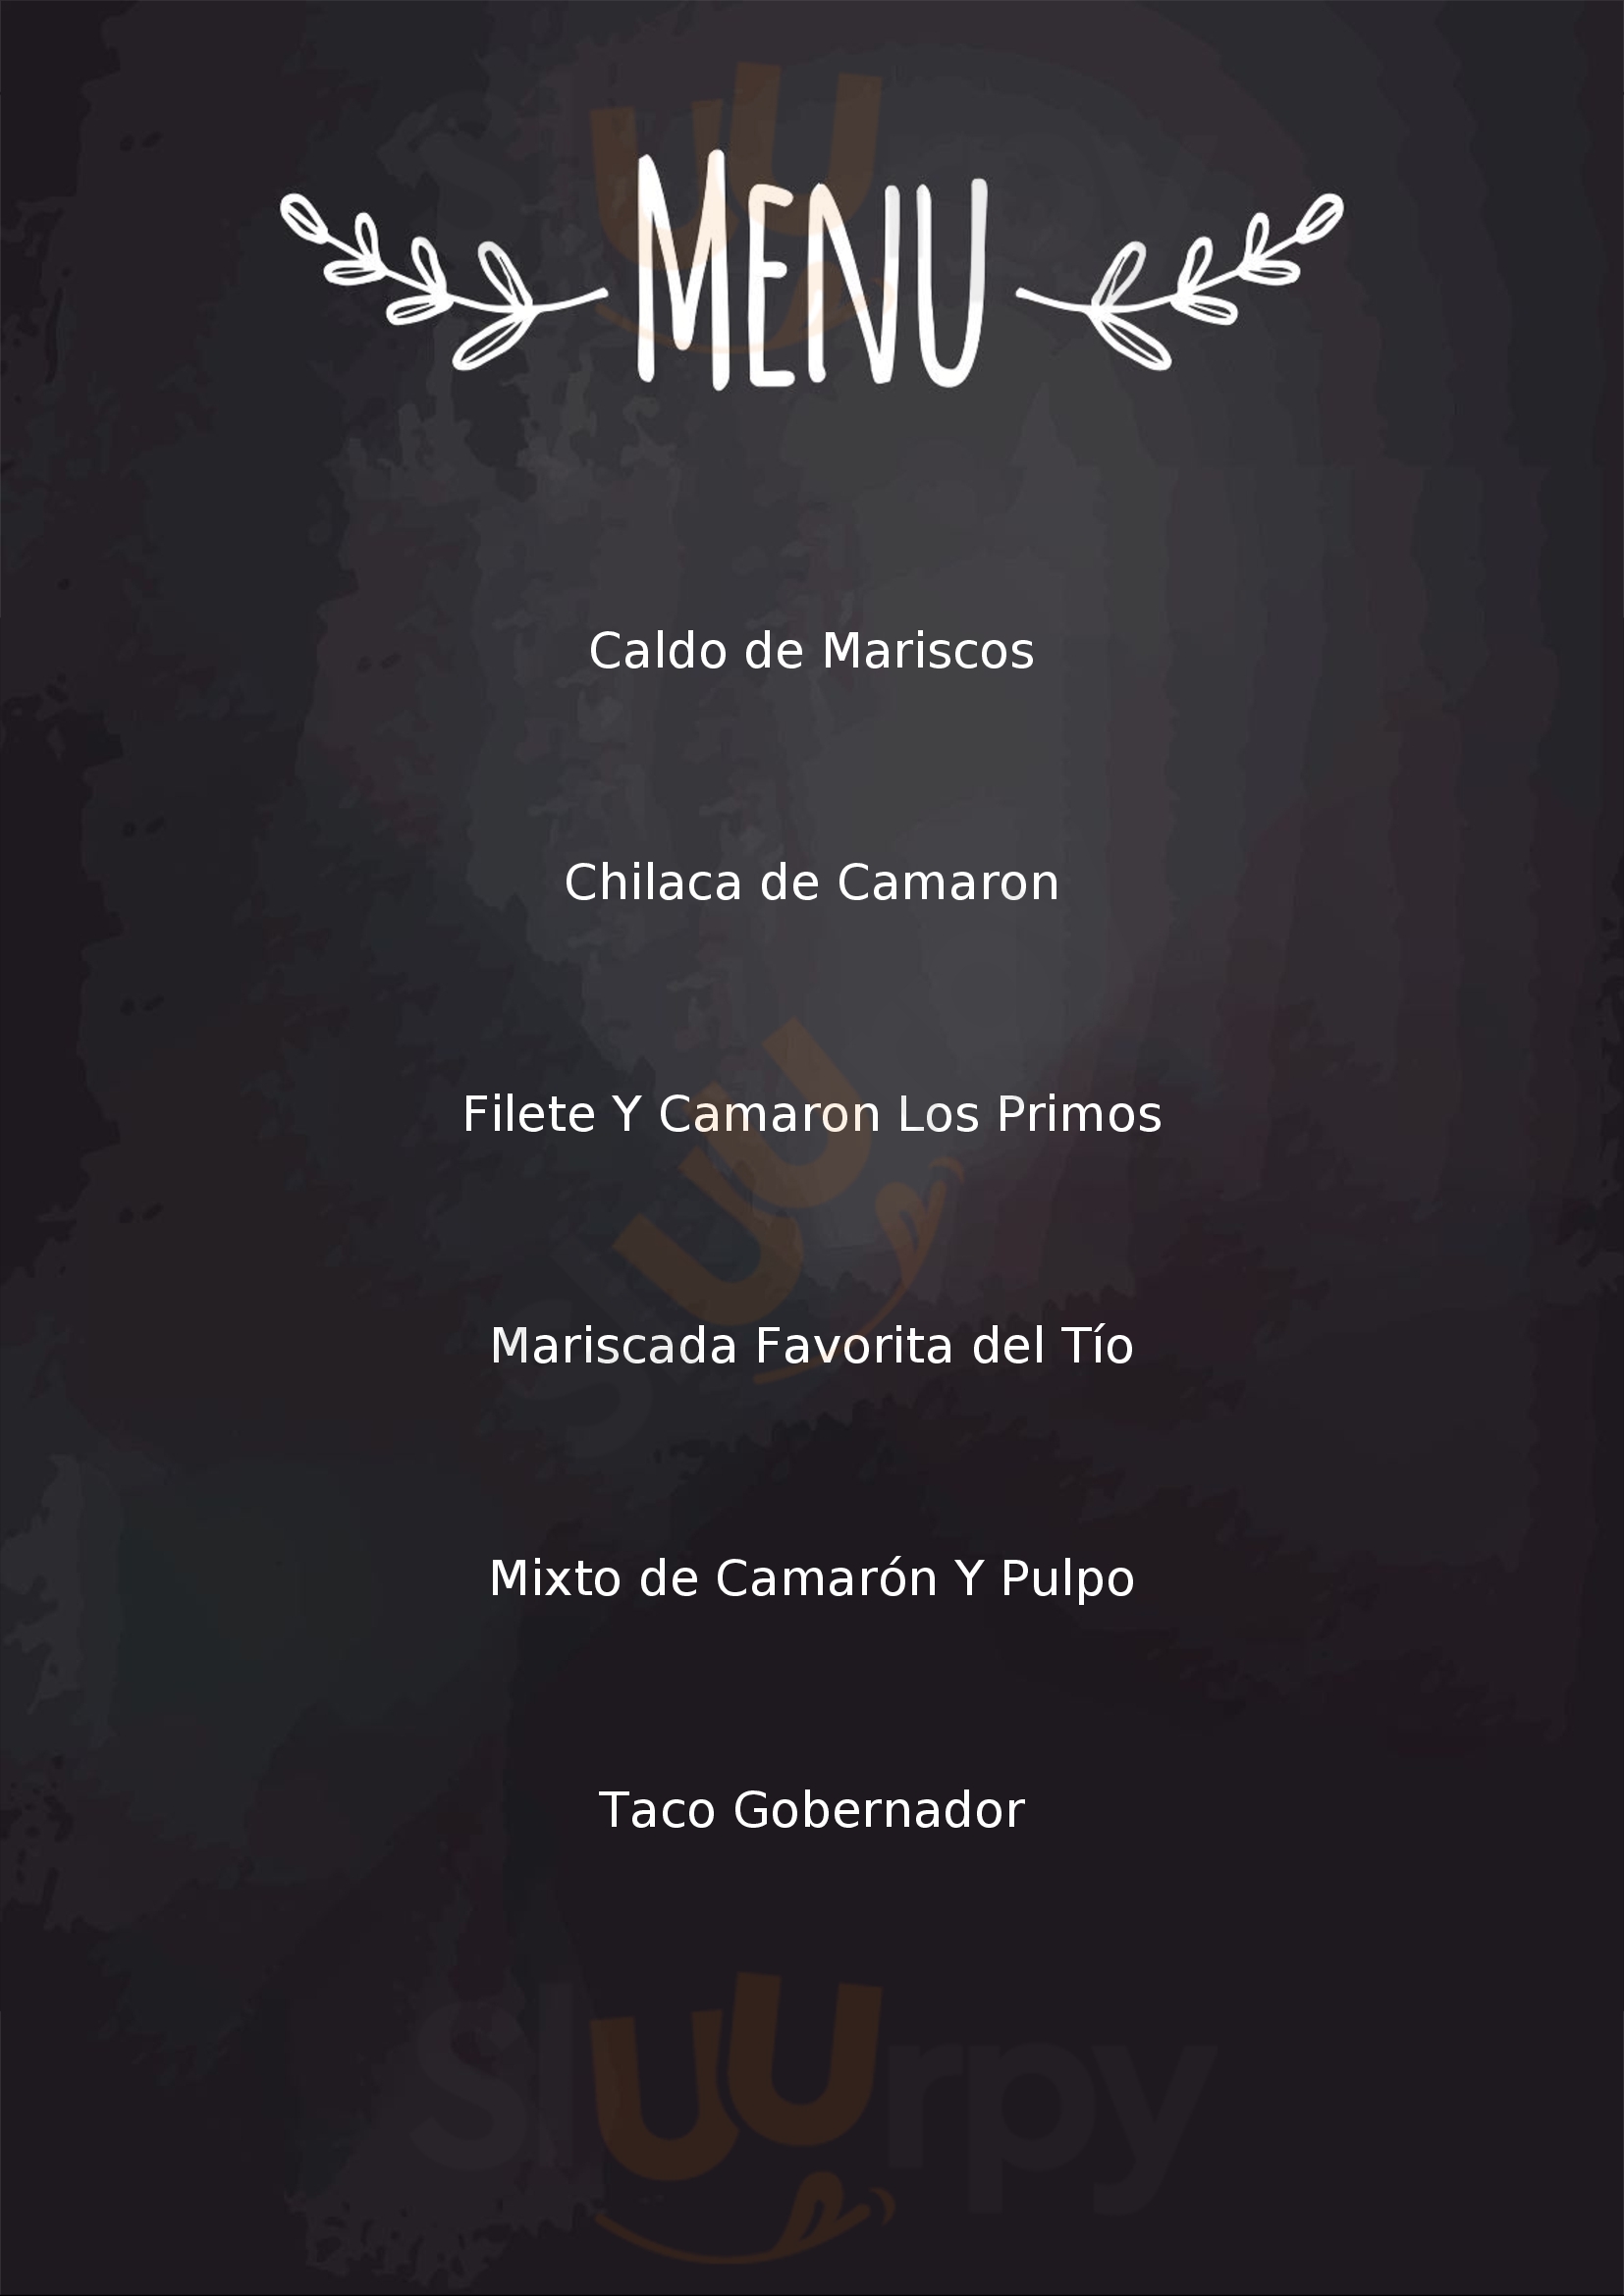 Los Primos Restaurante Andenes San Nicolás de los Garza Menu - 1